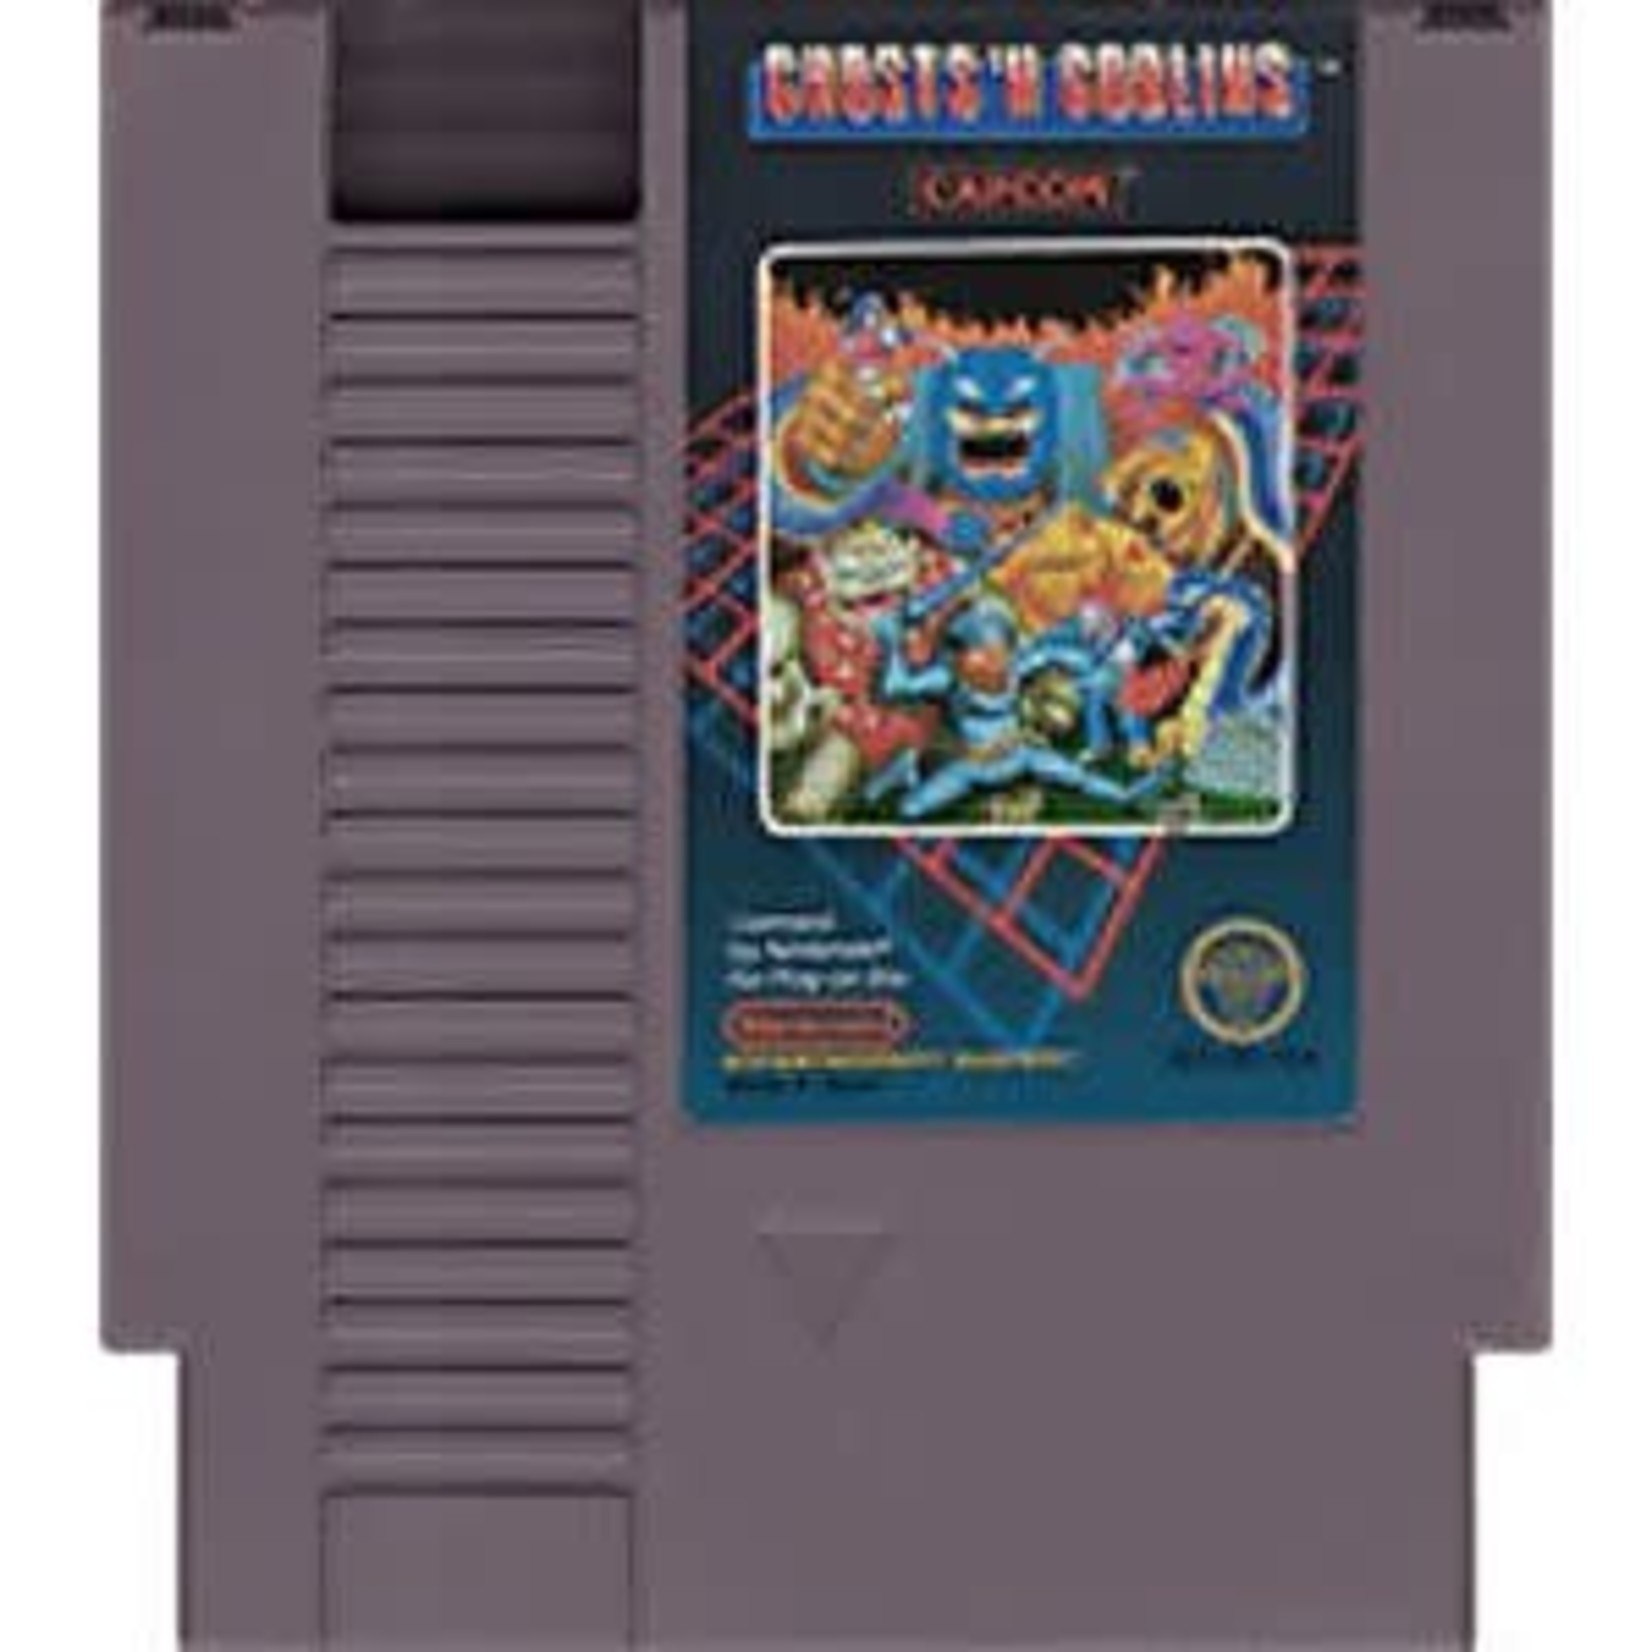 Ghosts 'n Goblins (NES)